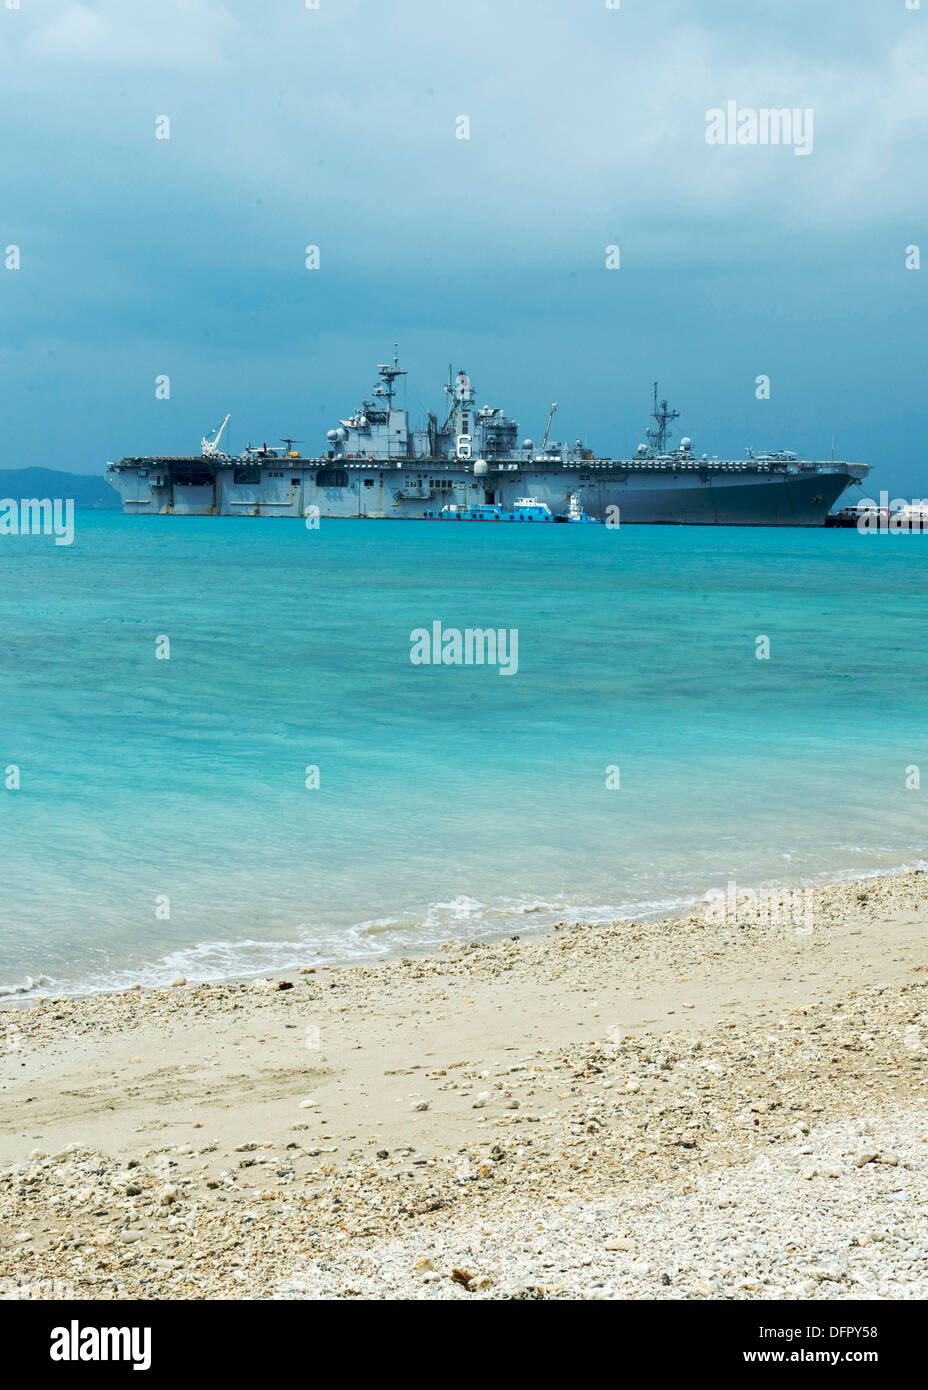 Buque de asalto anfibio USS Bonhomme Richard (LHD 6) está amarrado en la playa de arena blanca de Okinawa, durante una visita a Puerto programada. Bonhomme Richard es el buque insignia de la Bonhomme Richard Amphibious Ready Group y actualmente está realizando las operaciones de rutina en los EE.UU. Foto de stock